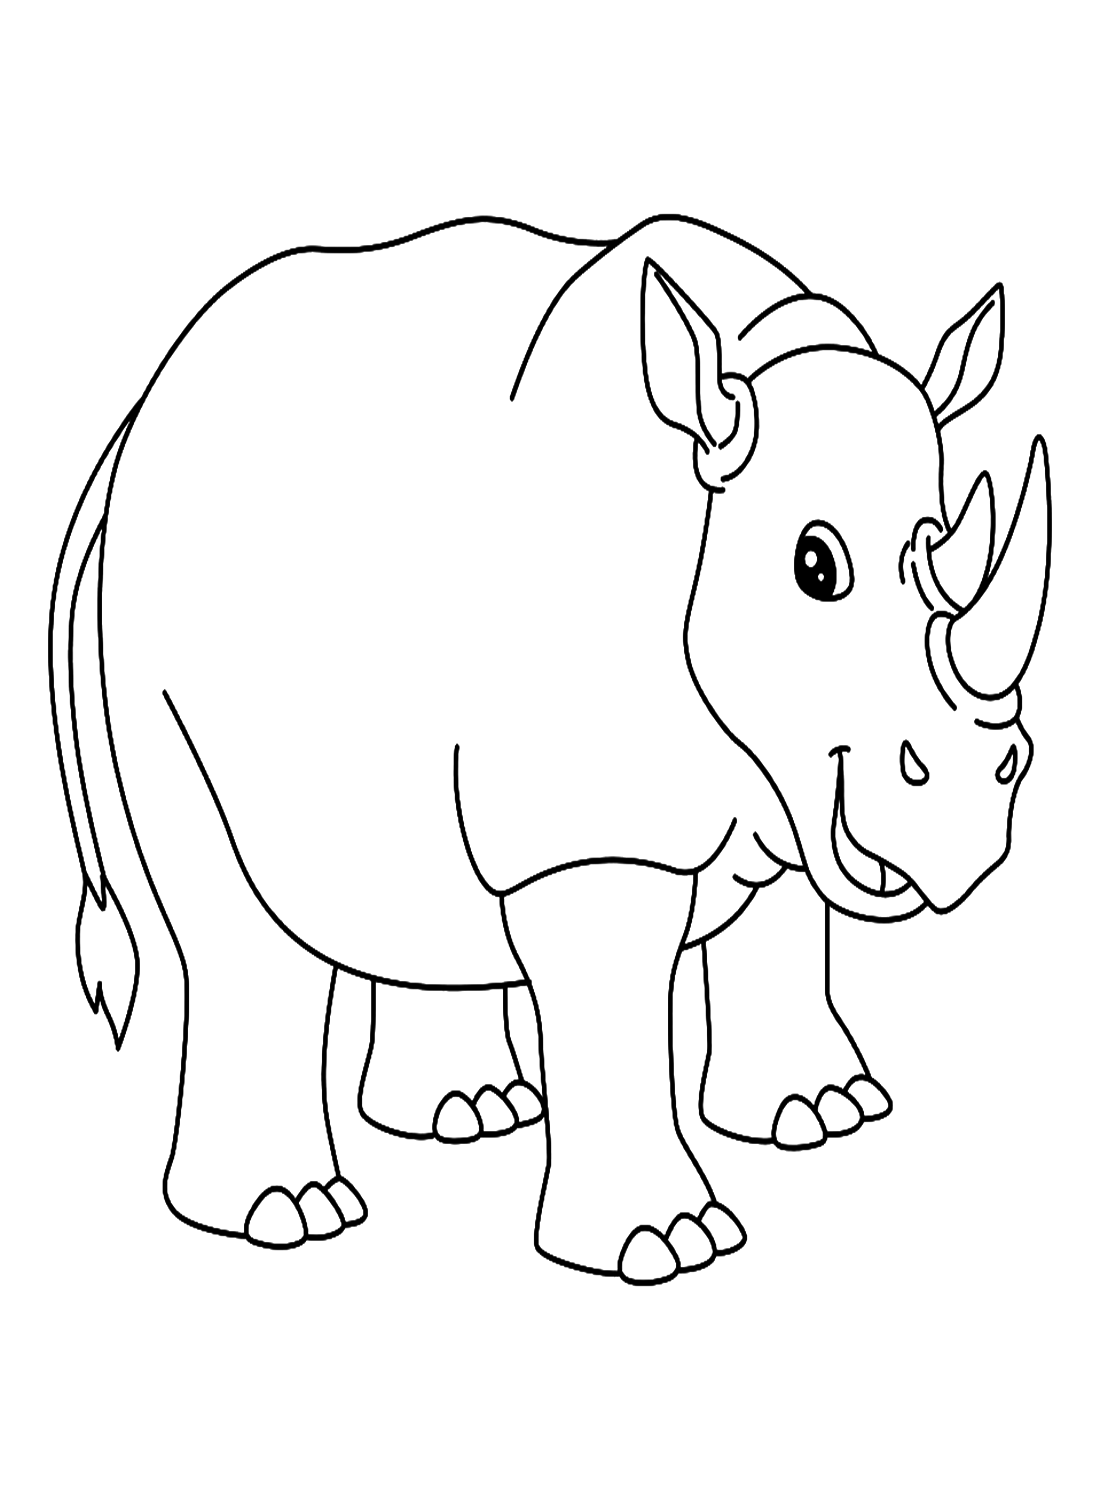 وحيد القرن البسيط من وحيد القرن